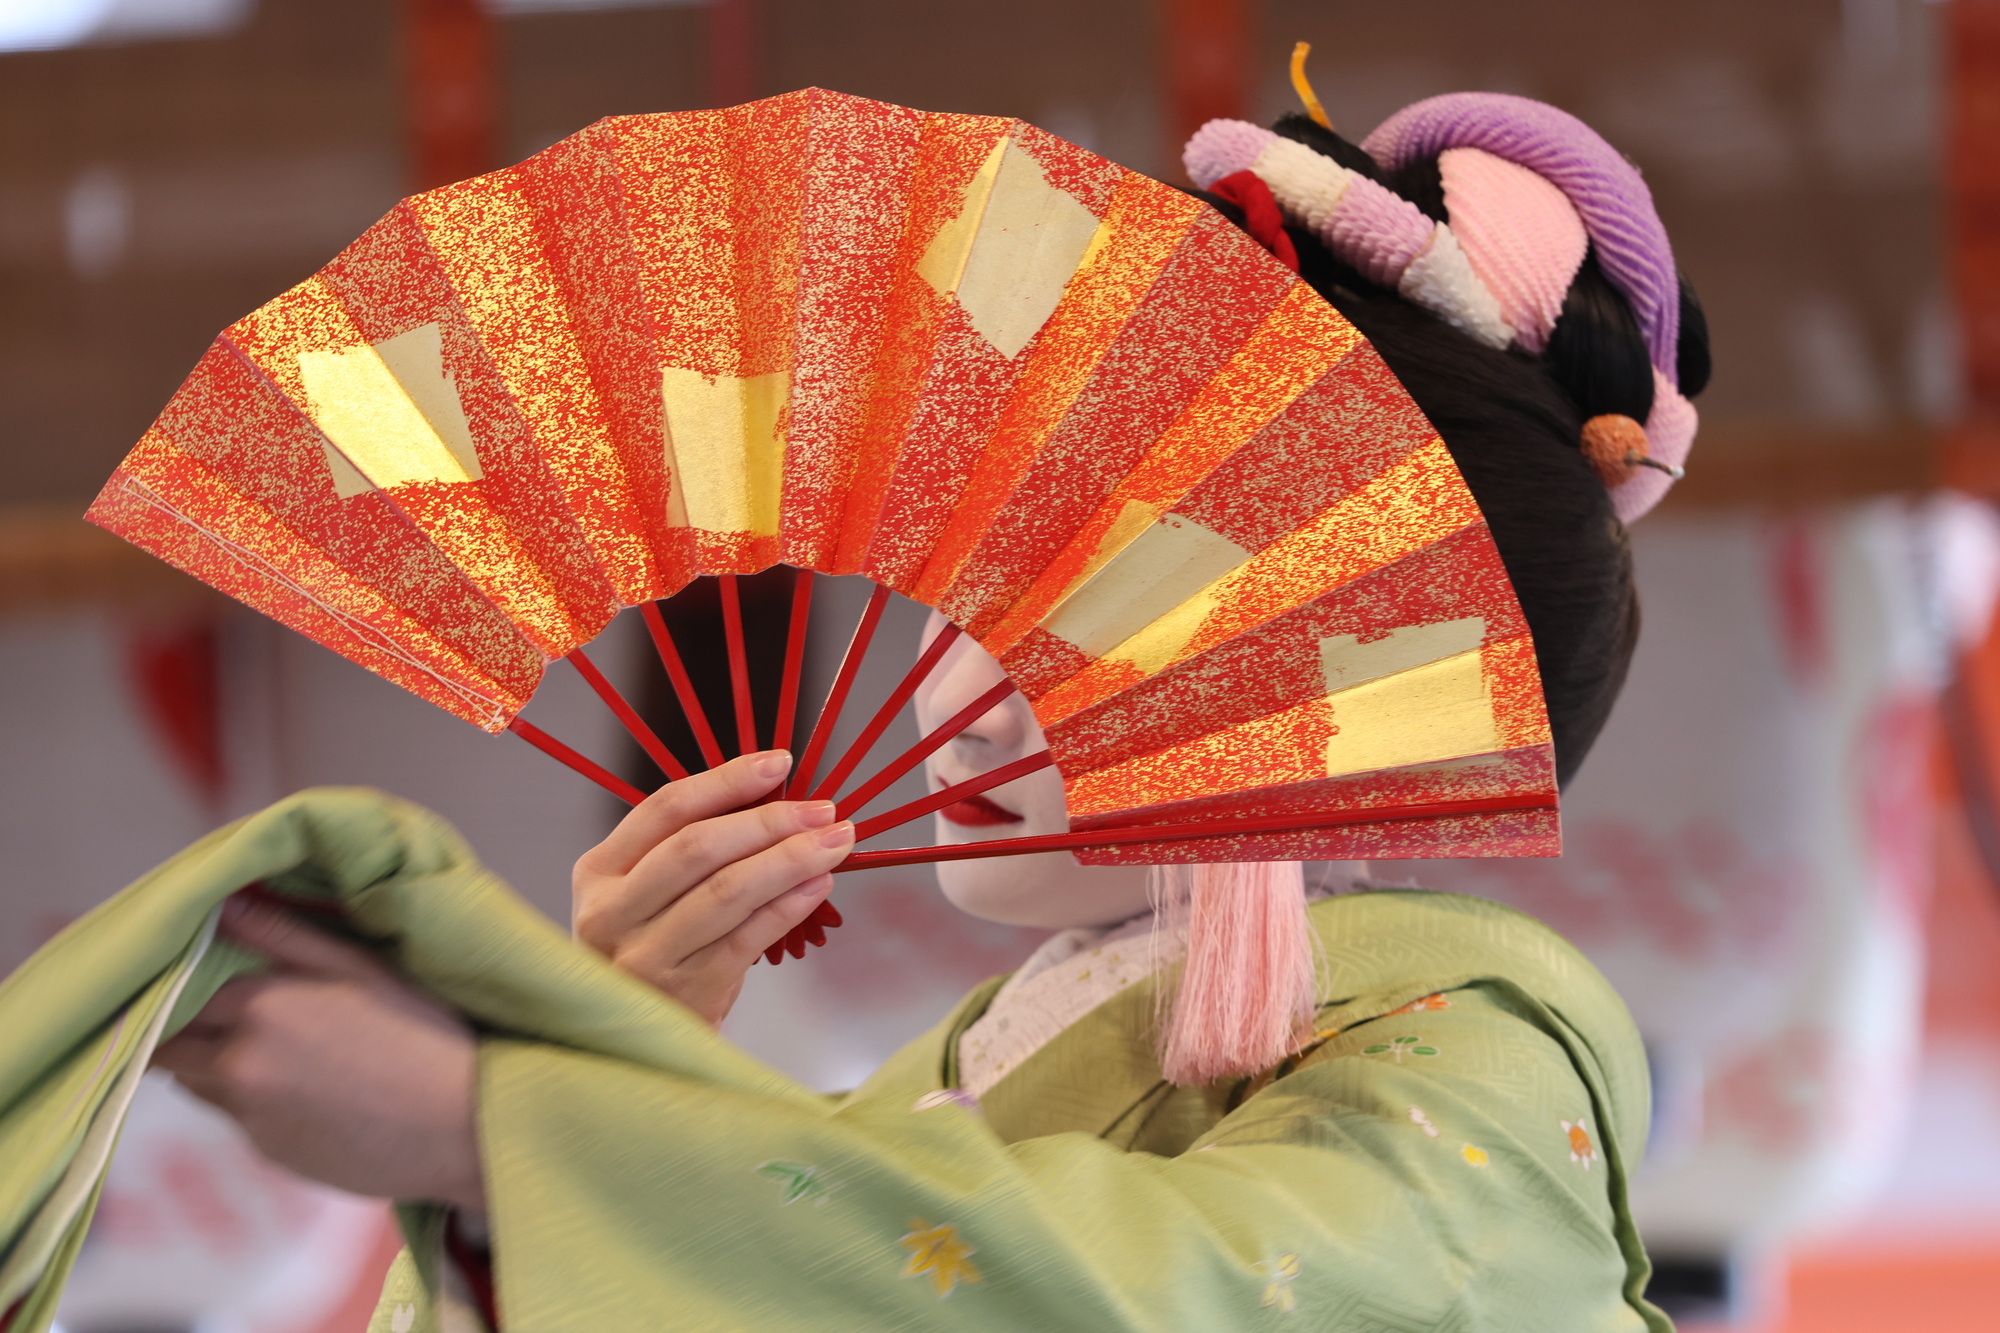 日本舞踊の魅力に迫る〜動きと表現の繊細さに注目